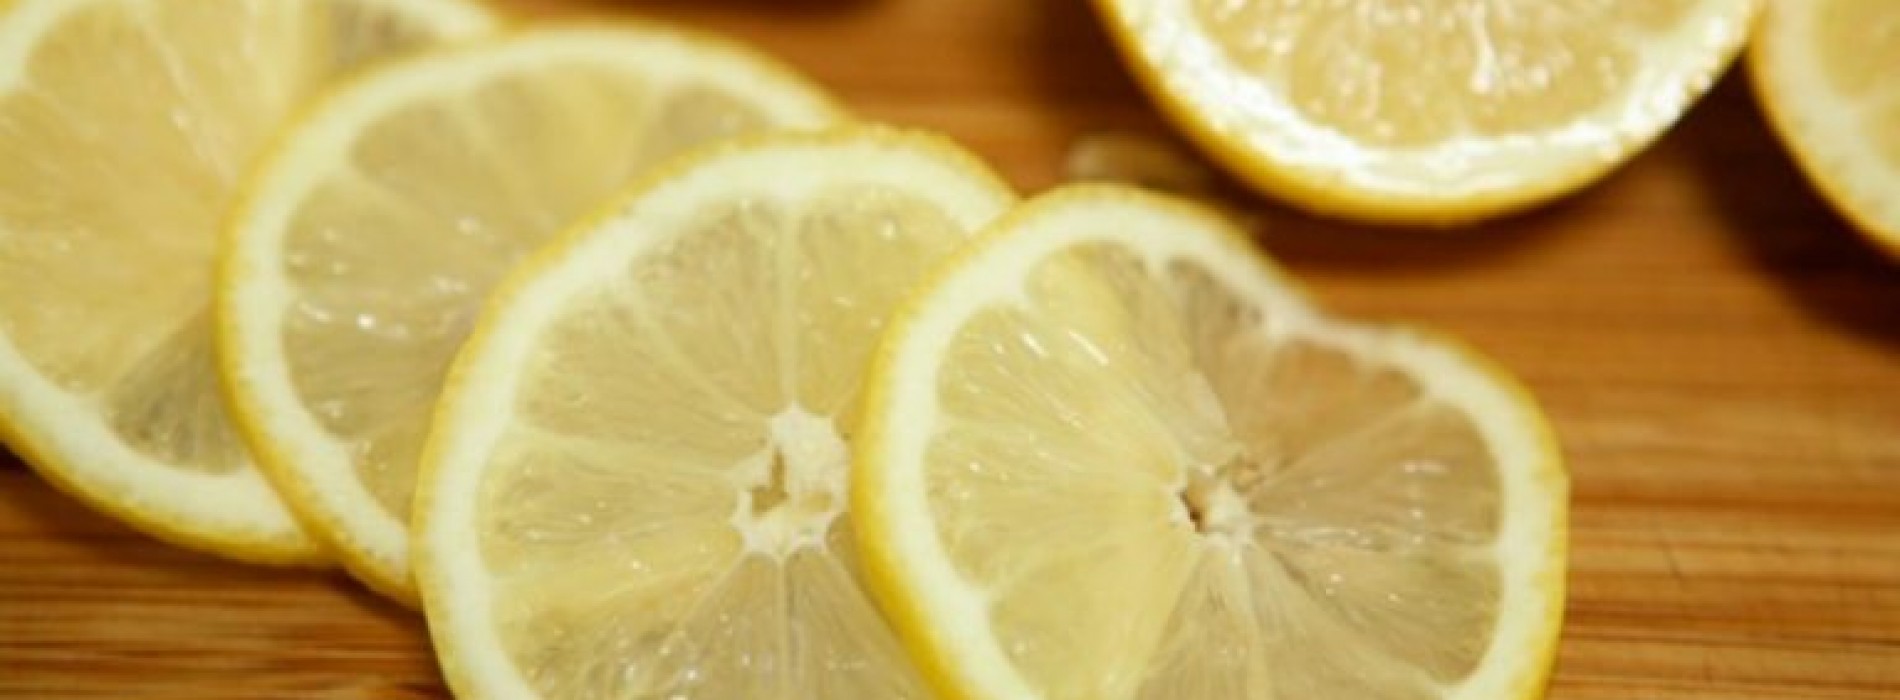 HEFTIG! Om deze reden moet je nooit vragen om een schijfje citroen in je drankje!